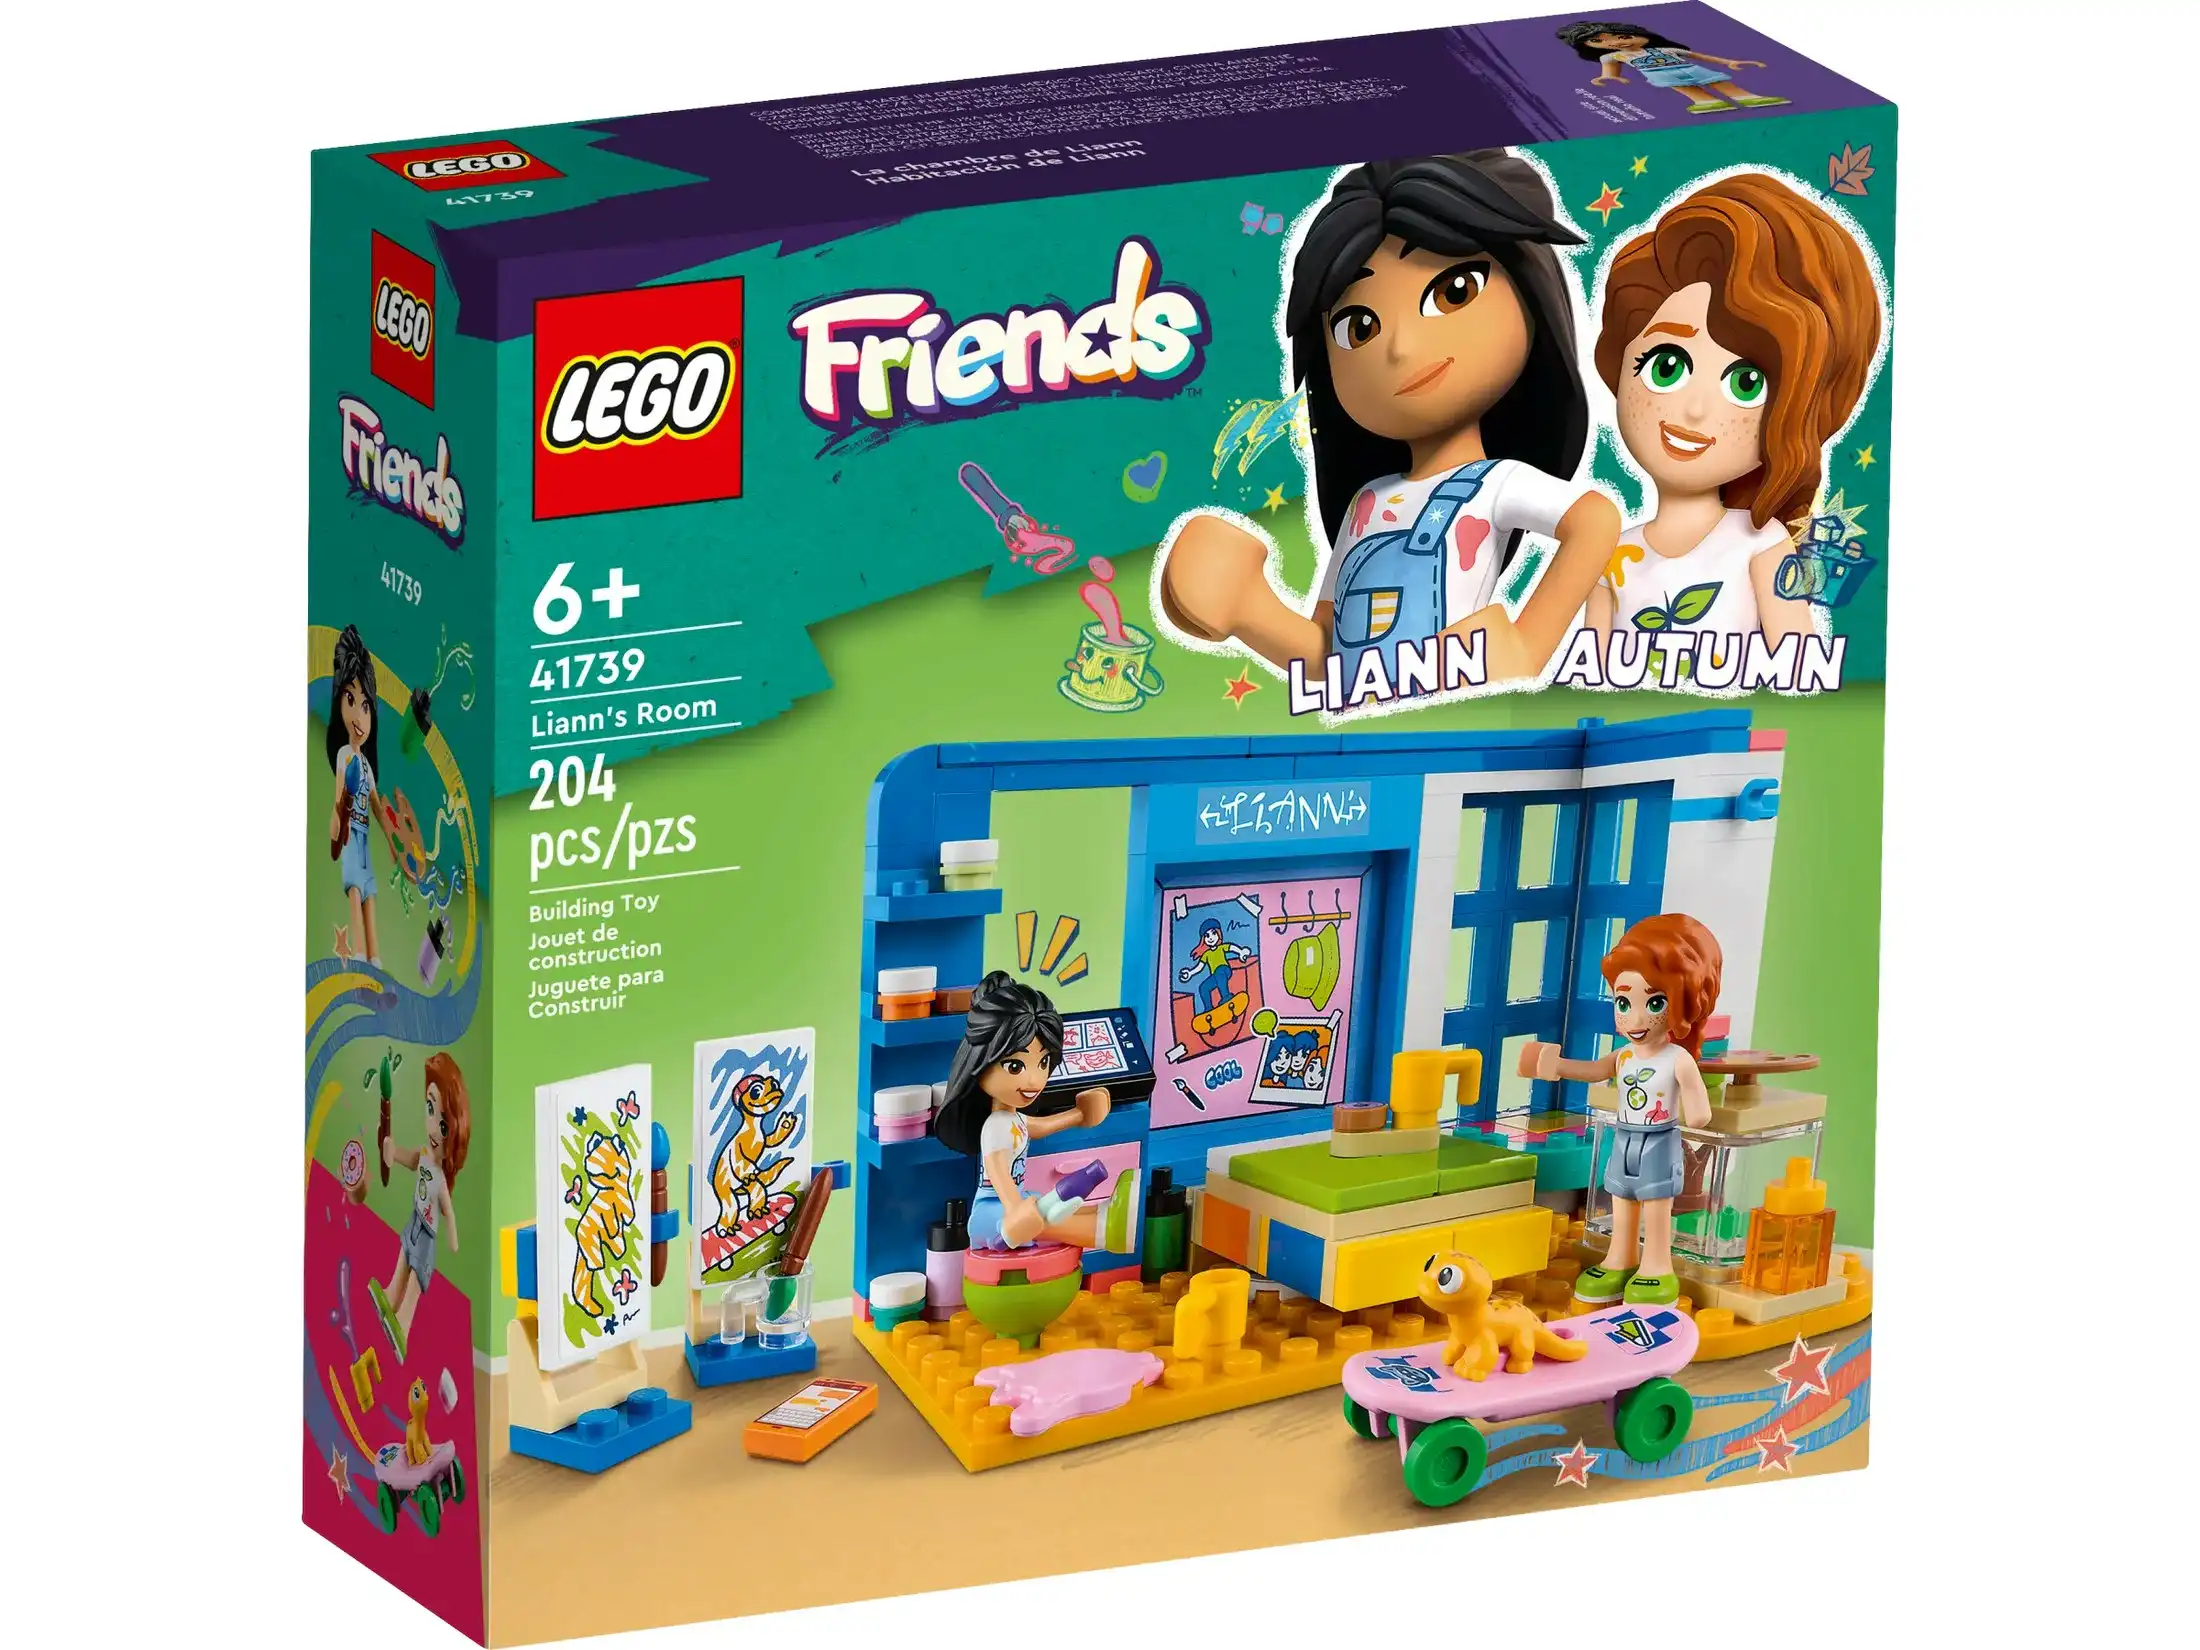 LEGO 41739 Liann's Room - Friends